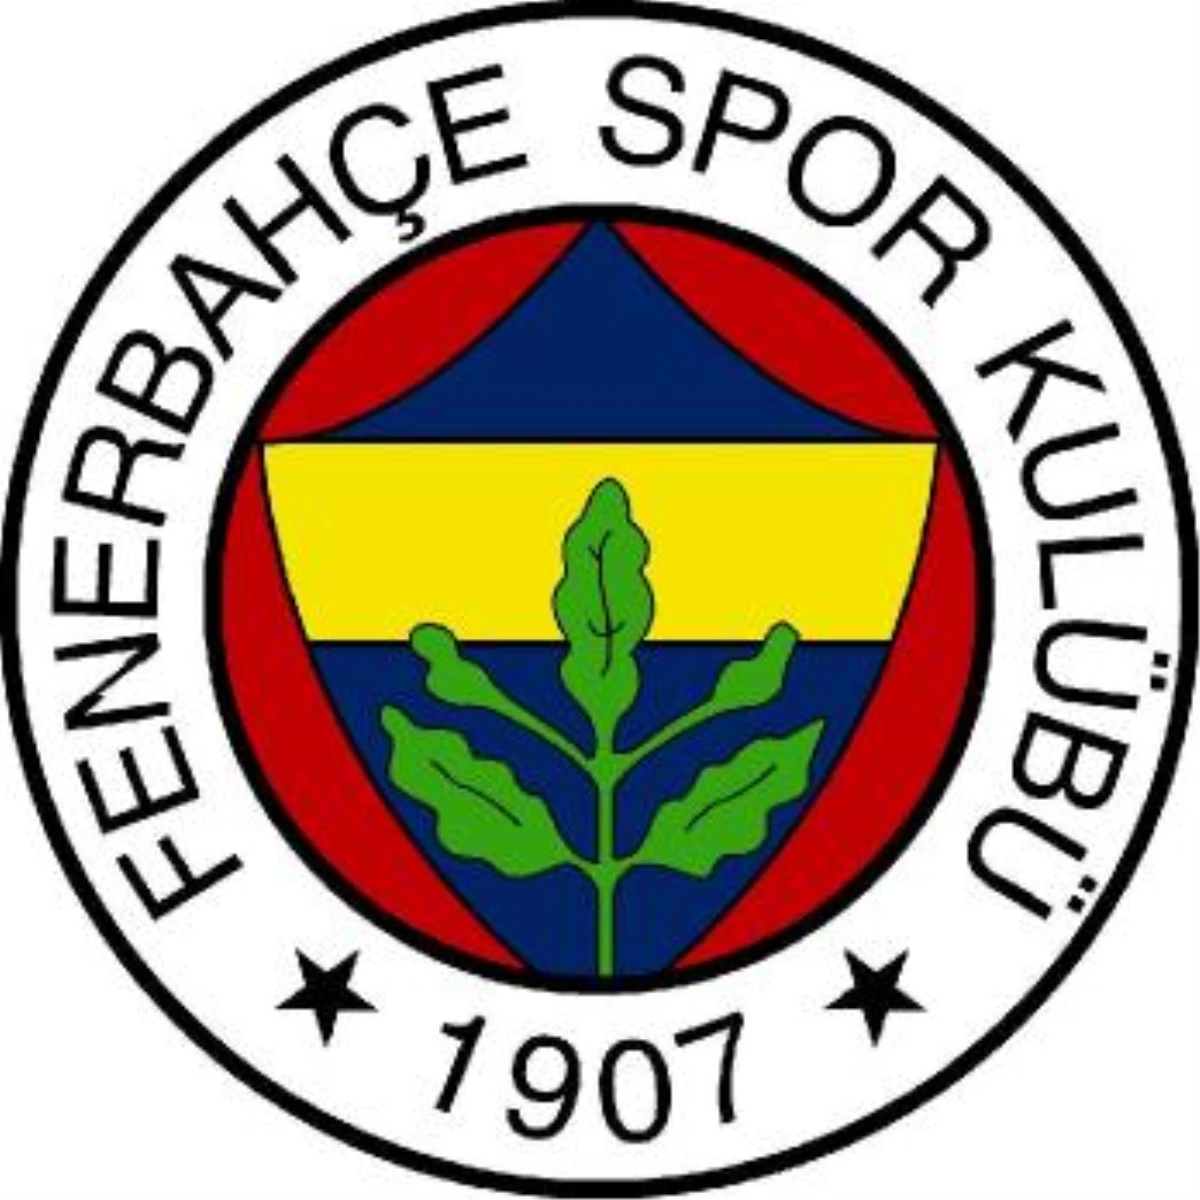 Fenerbahçe Sk 2010/2011 Sezon Formalarını Tanıtımı